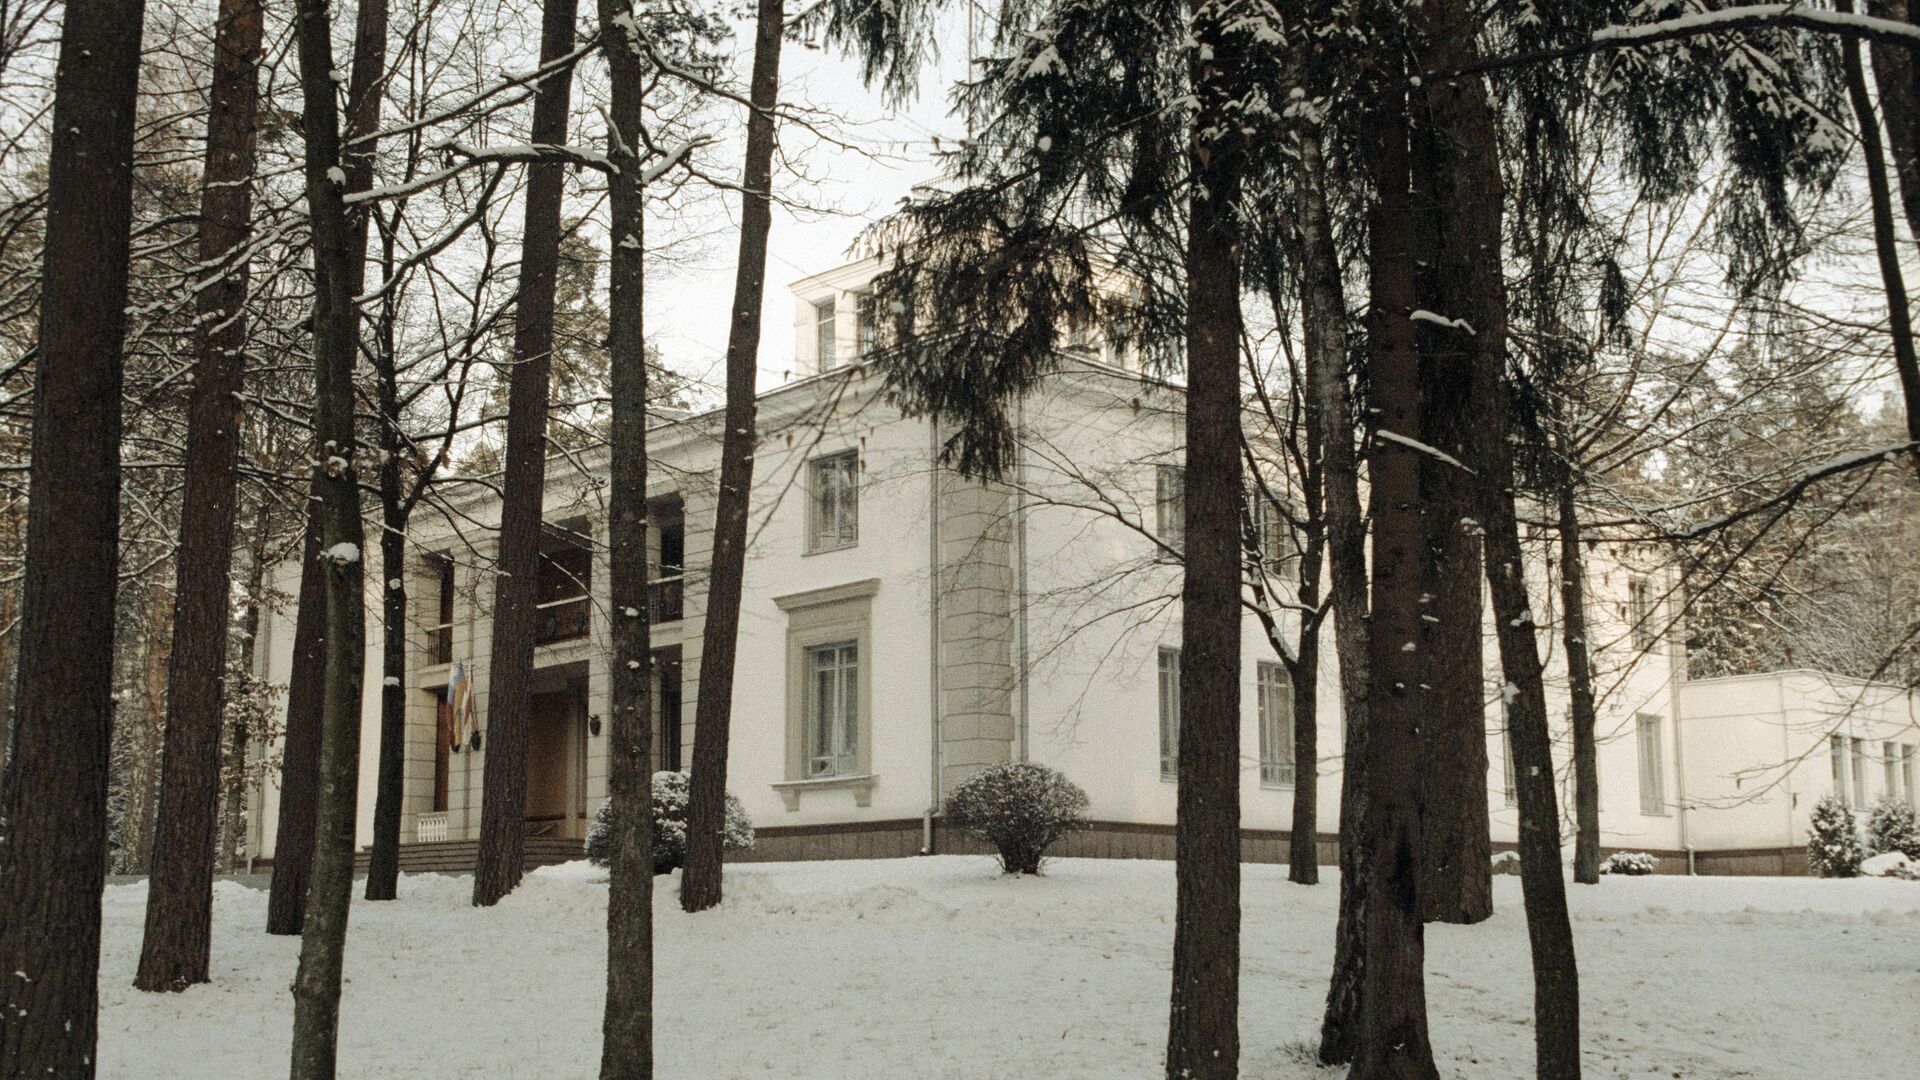 Дом, в котором были подписаны документы о создании СНГ, 8 декабря 1991 года, Беловежская Пуща, Вискули - Sputnik Беларусь, 1920, 08.12.2021